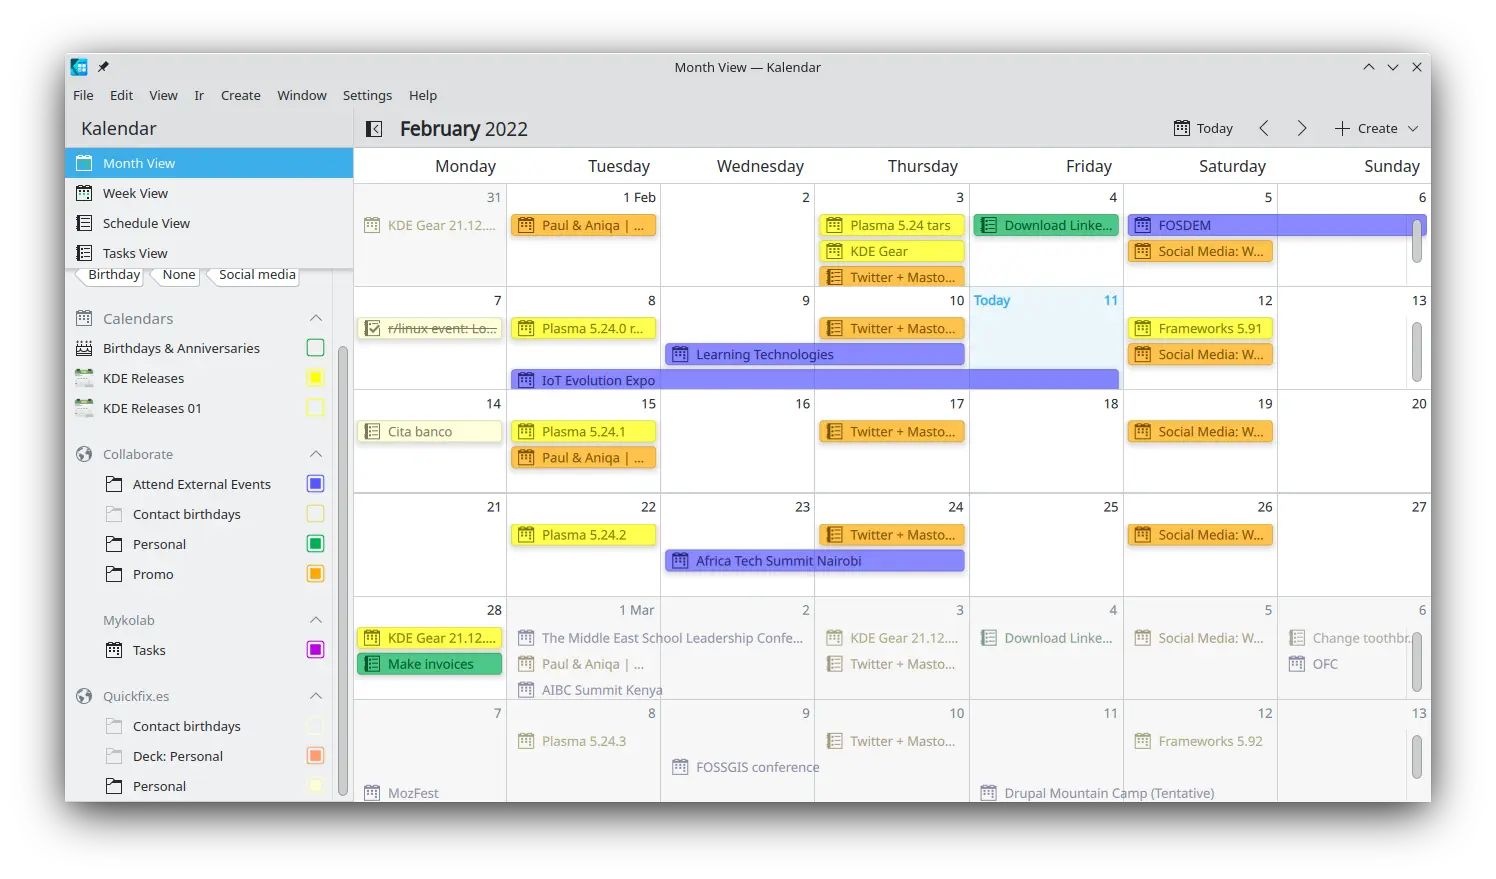 Kalendar 幫您追蹤您的約定和工作項目。